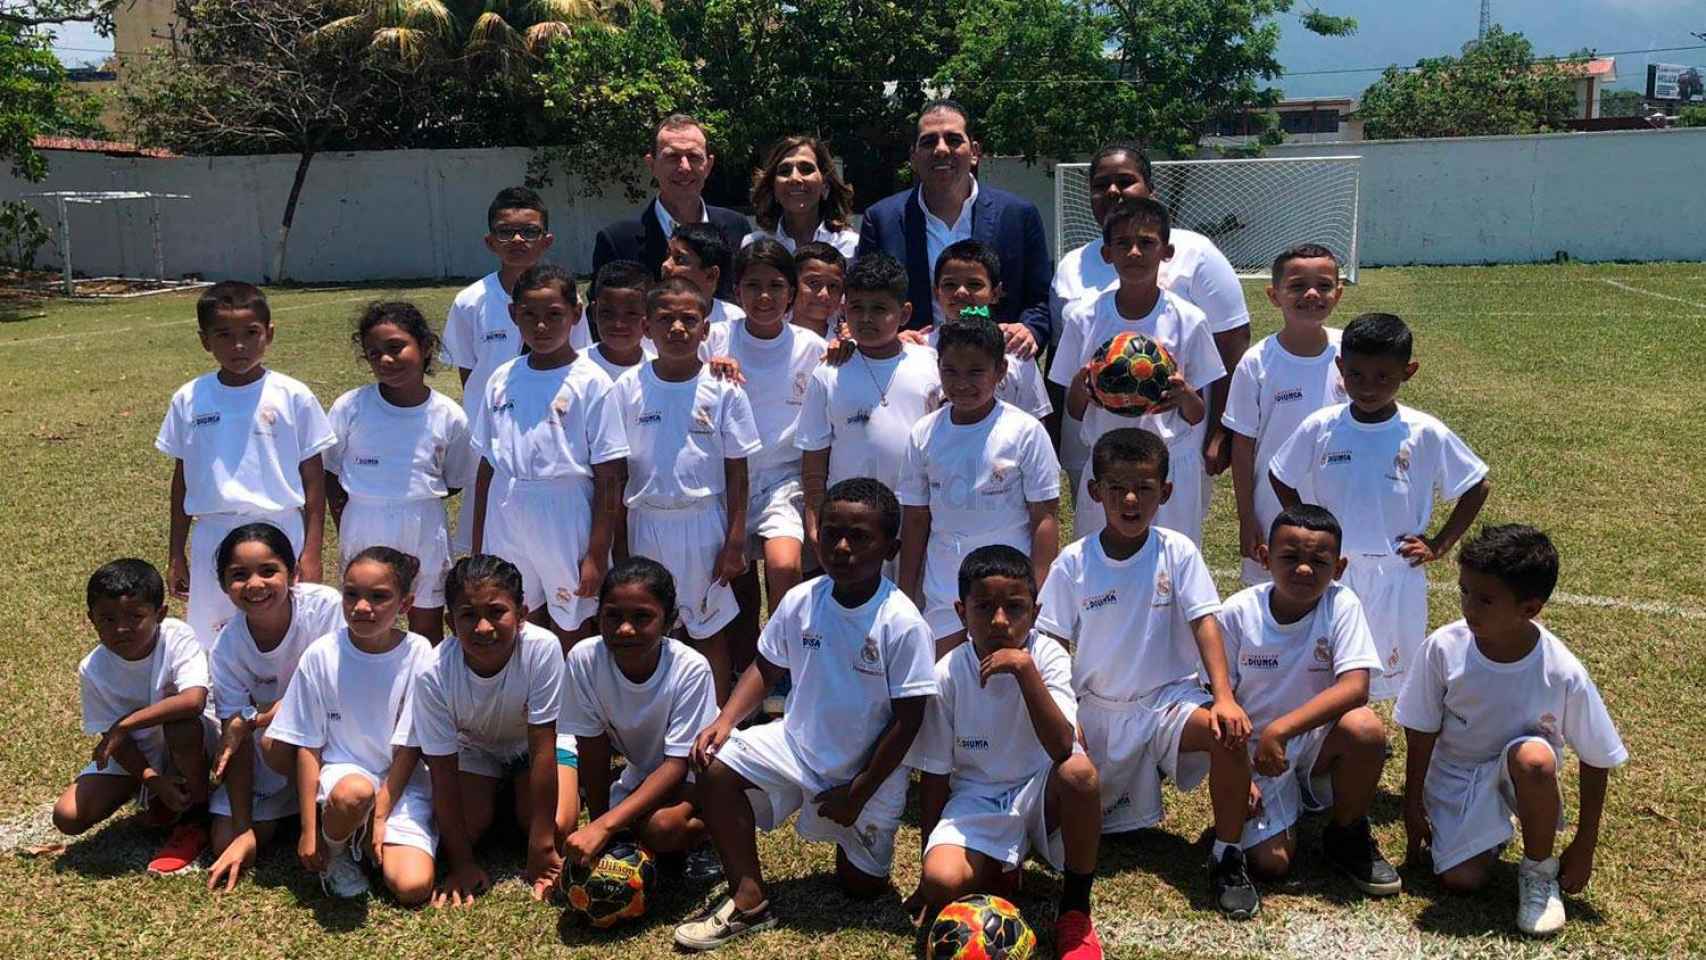 La Fundación Real Madrid inauguró una escuela en Honduras